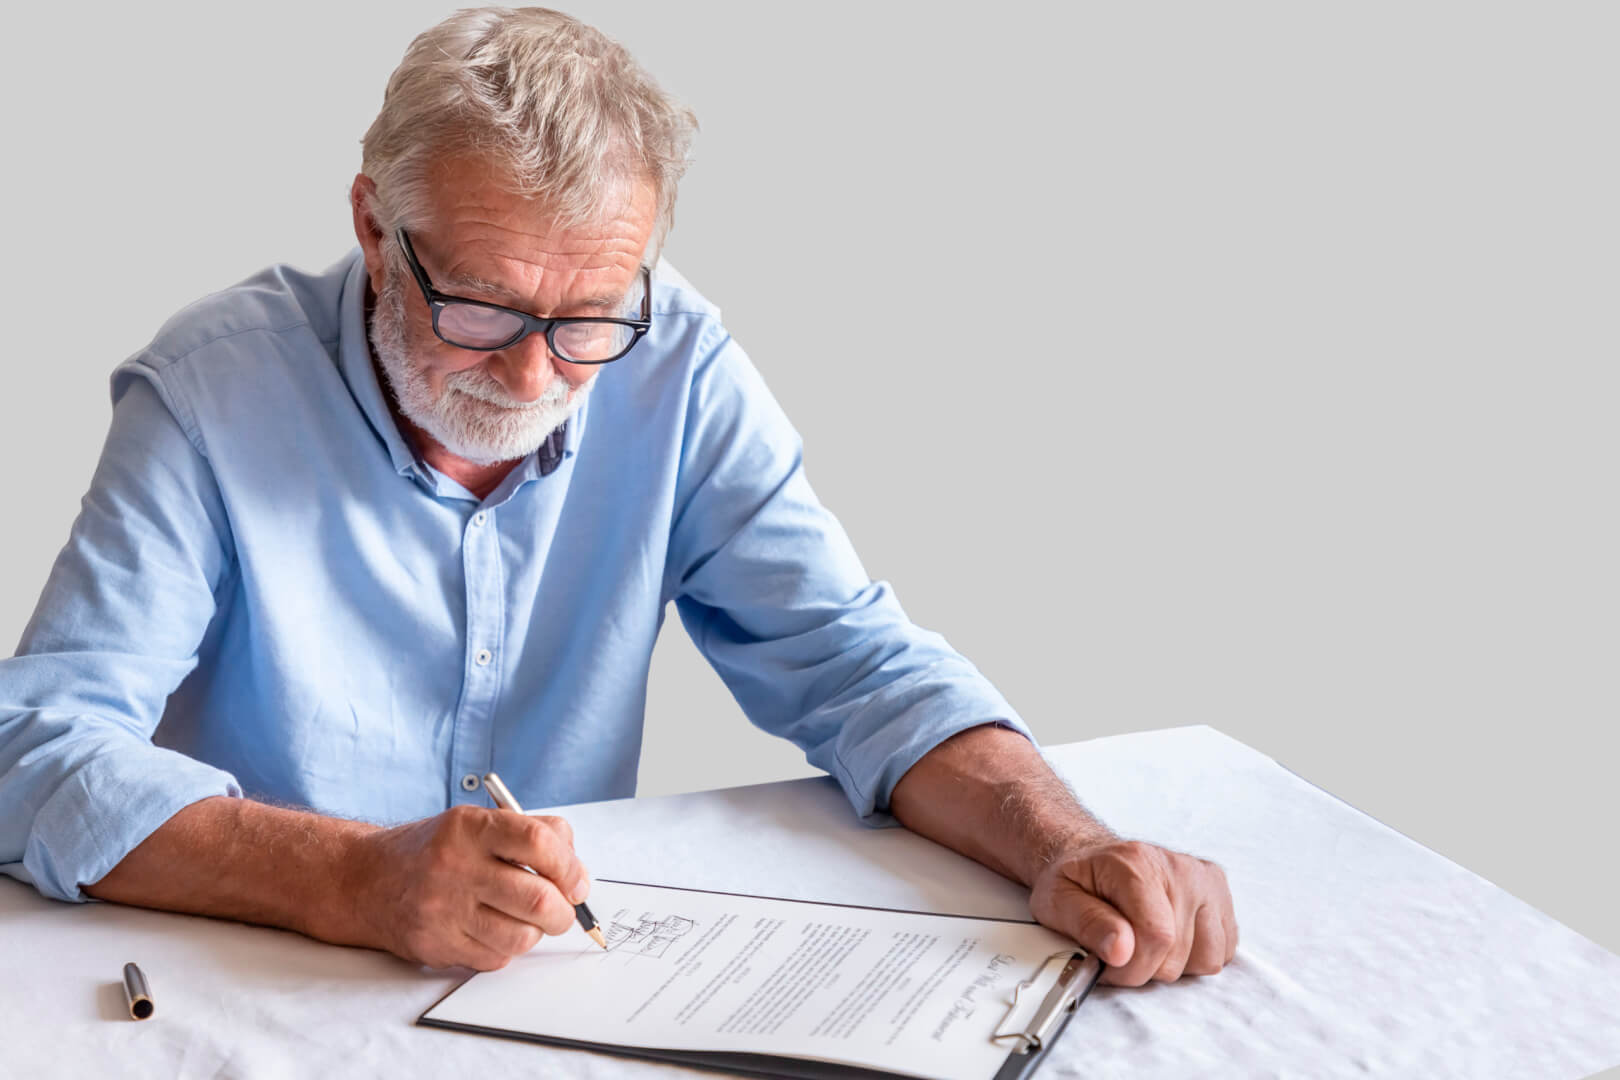 En la imagen, una persona mayor firma las condiciones de un contrato para contar con una empleada del hogar.